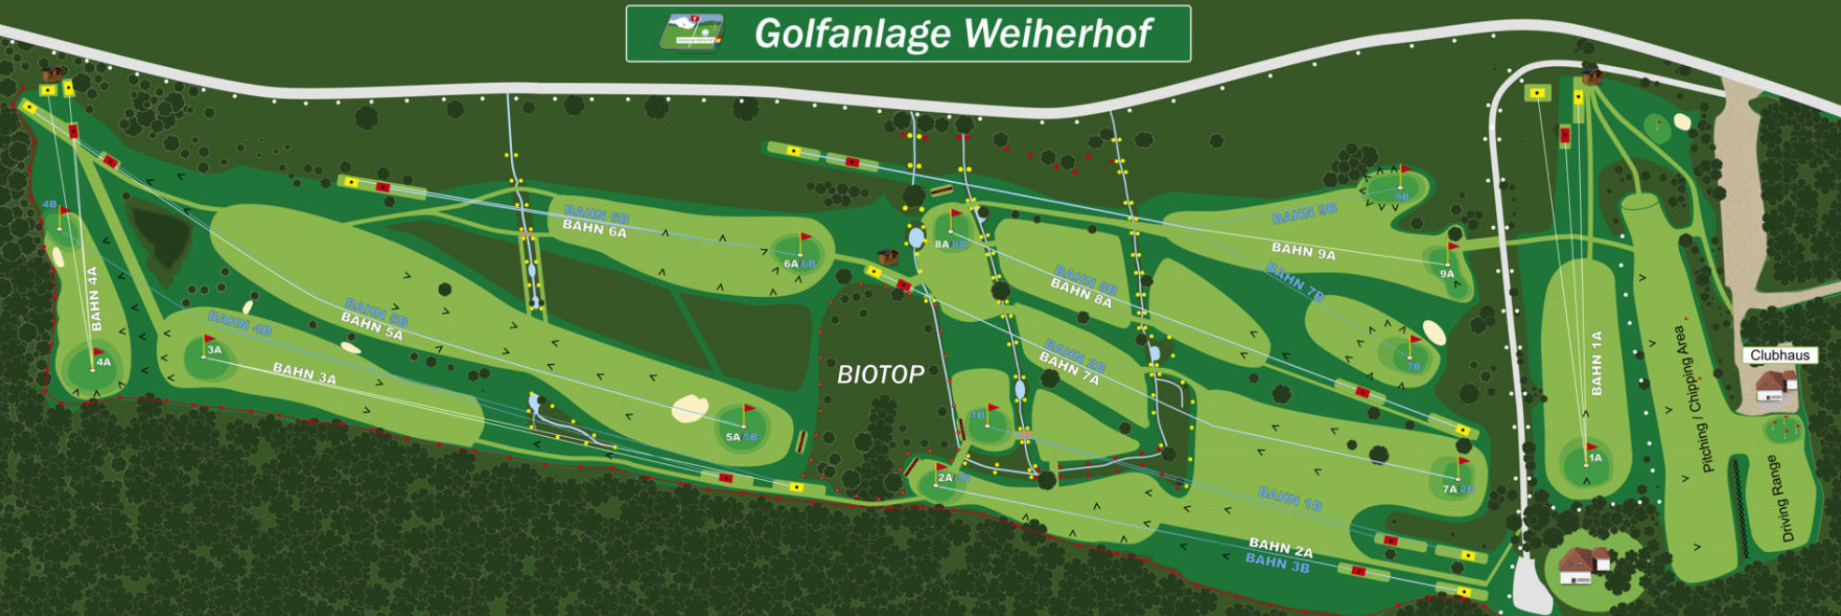 Golfanlage Weiherhof Platz Course Skizze